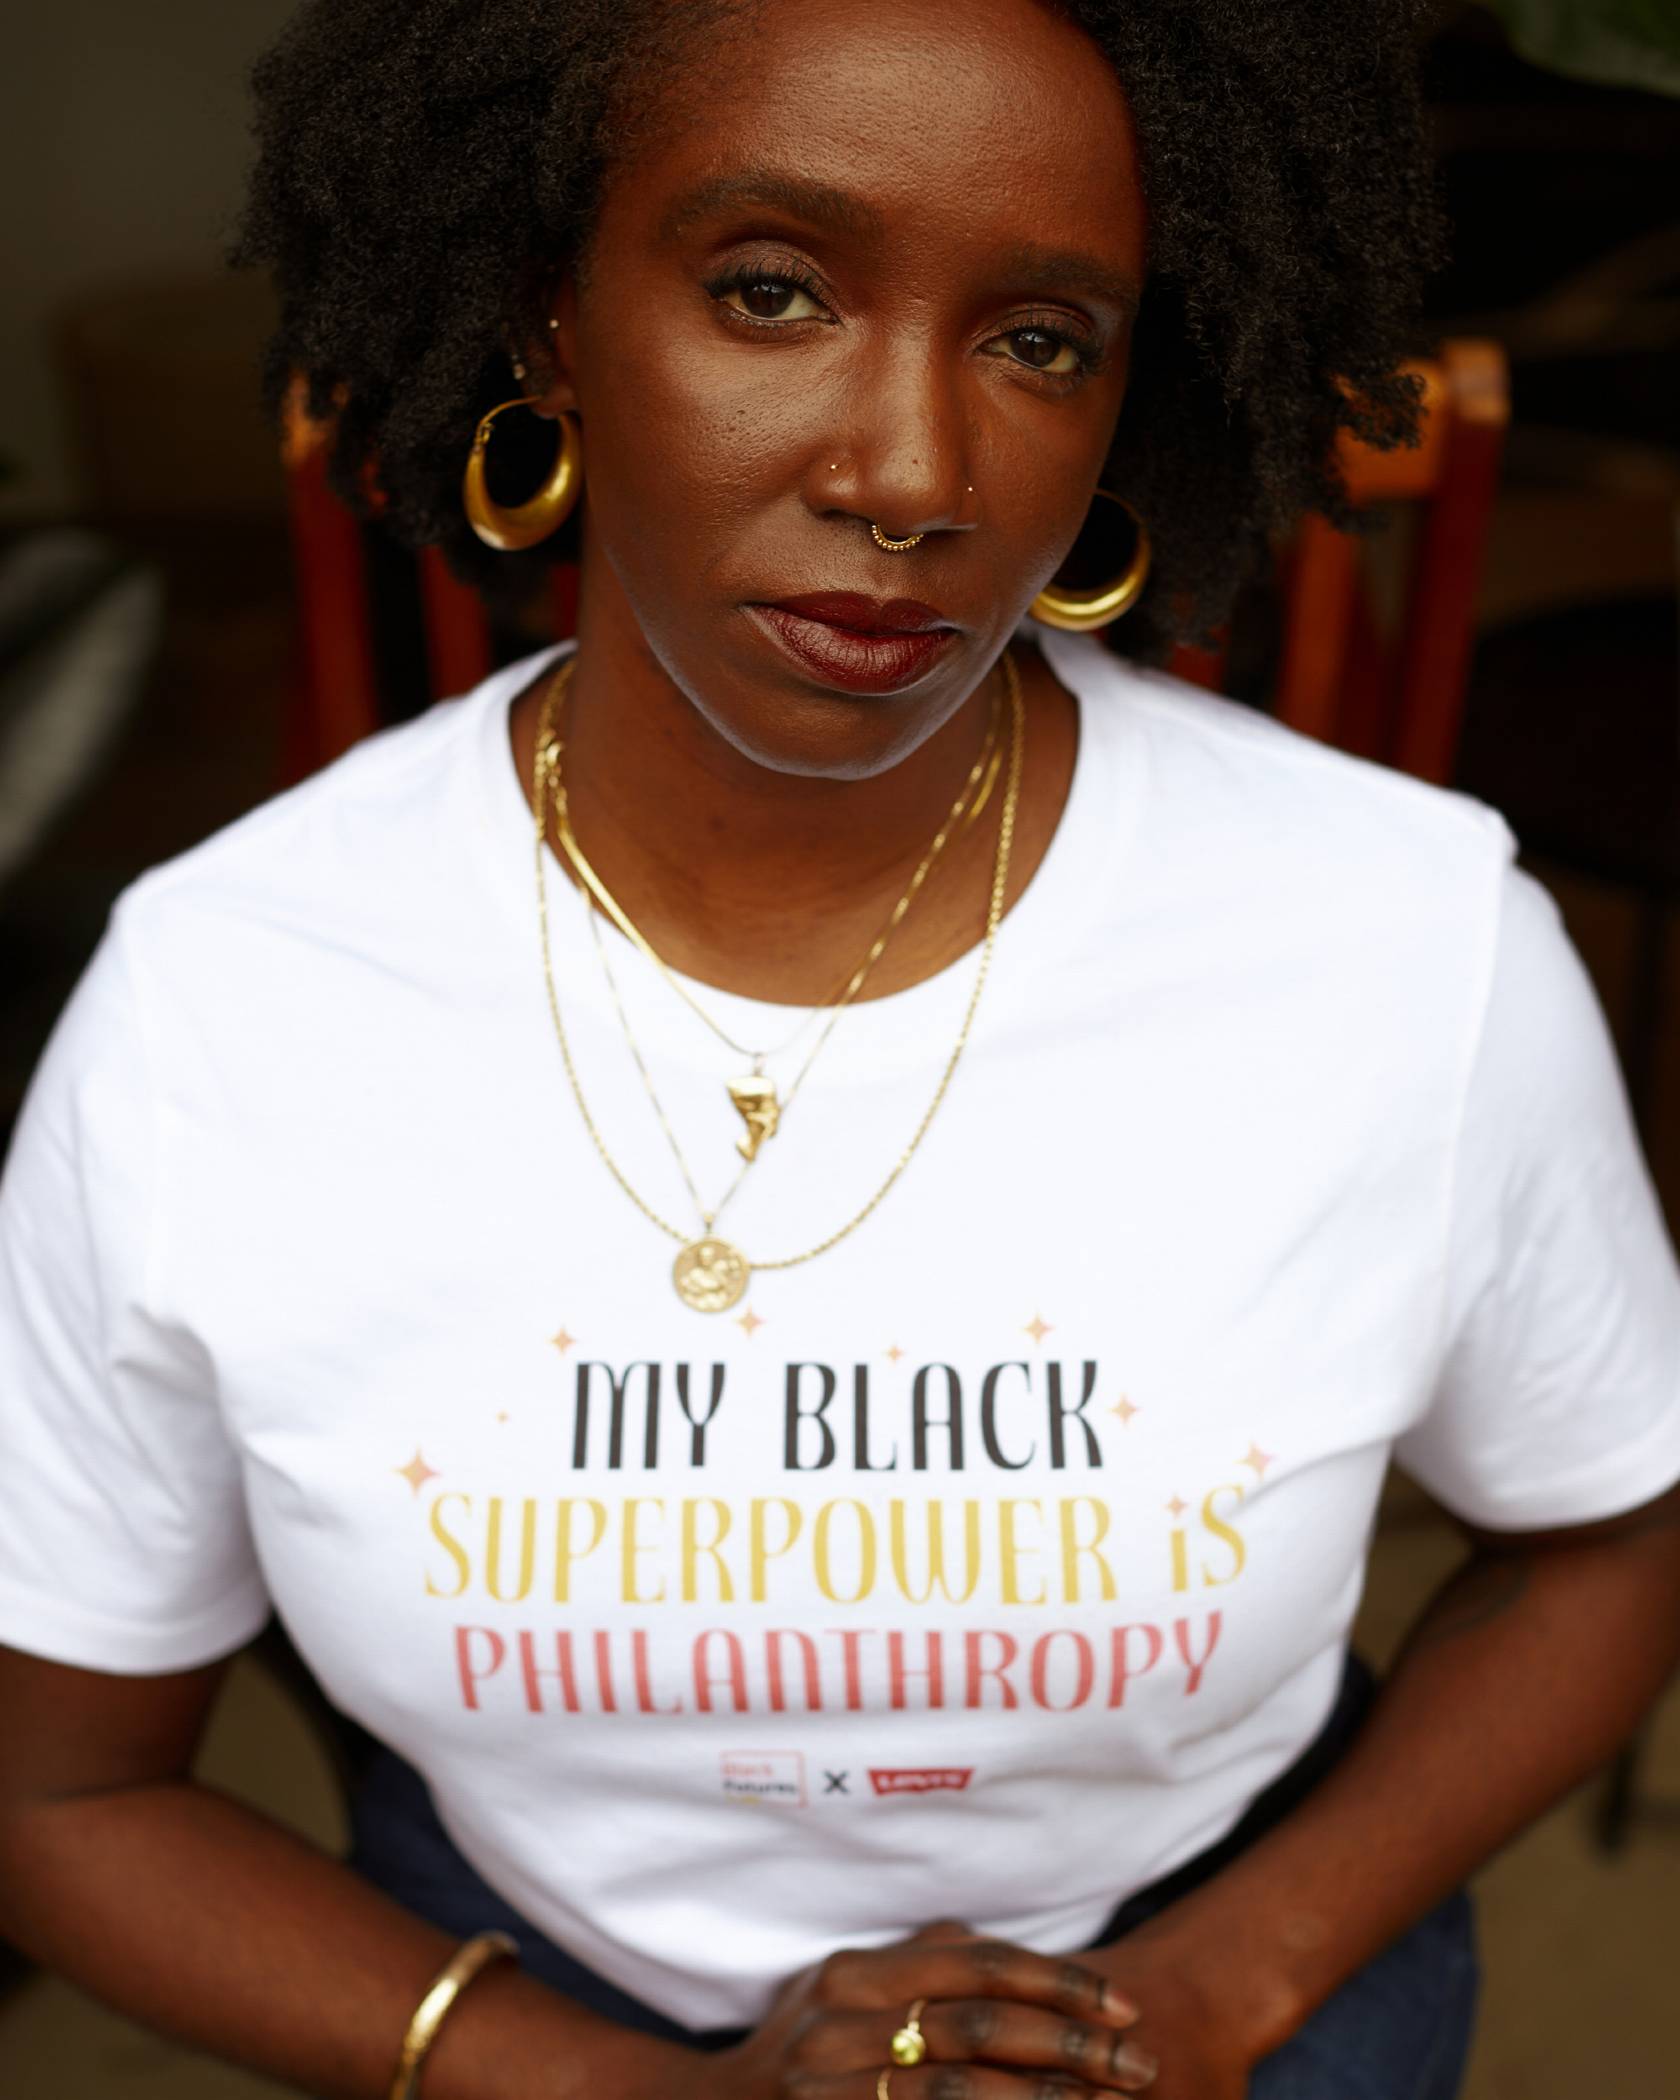 Nwamaka Agbo wearing black superpower shirt.